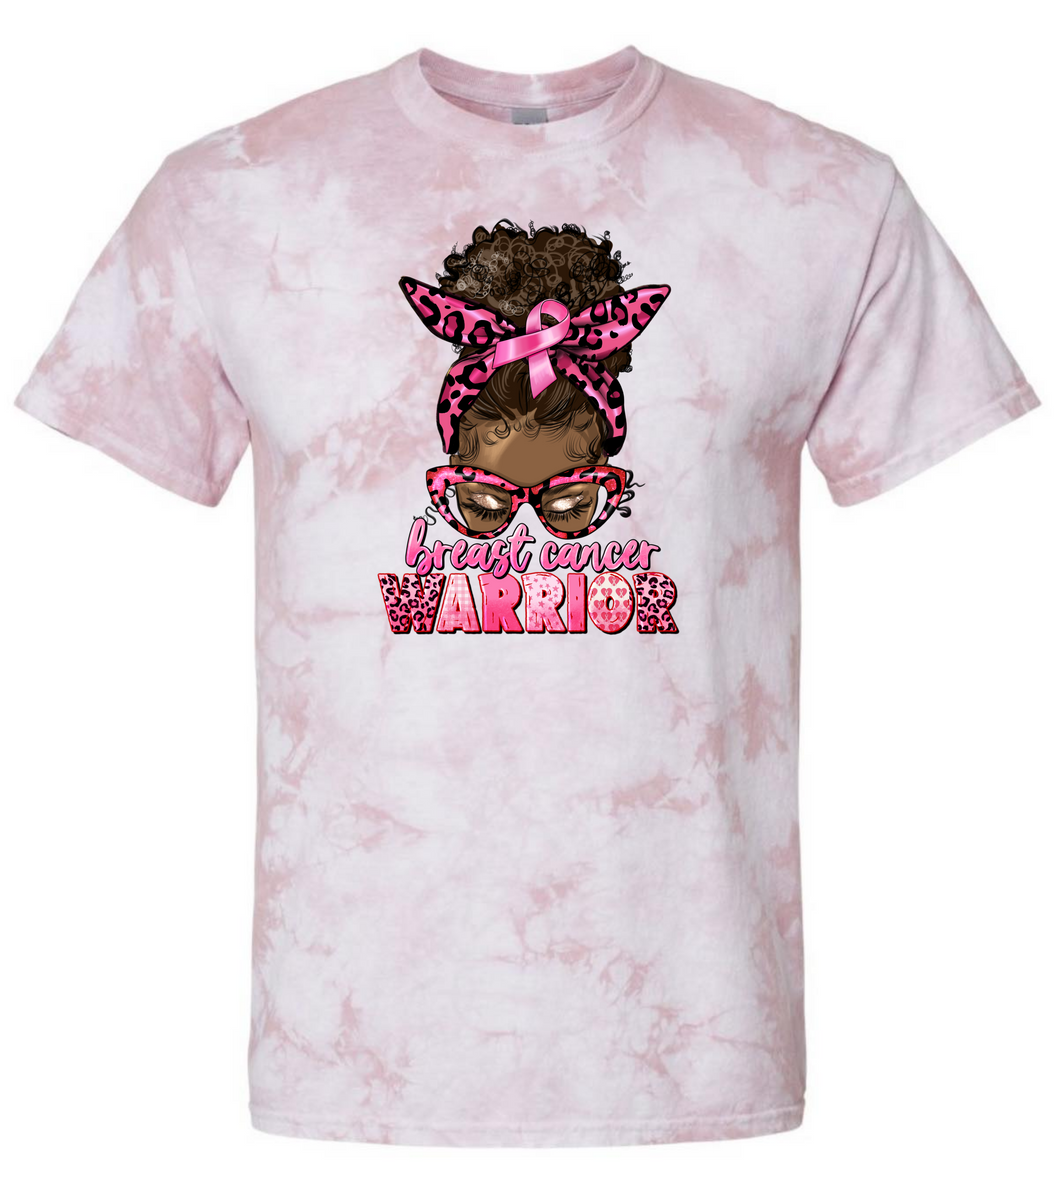 **Limited Edition** Breast Cancer Warrior Tshirt